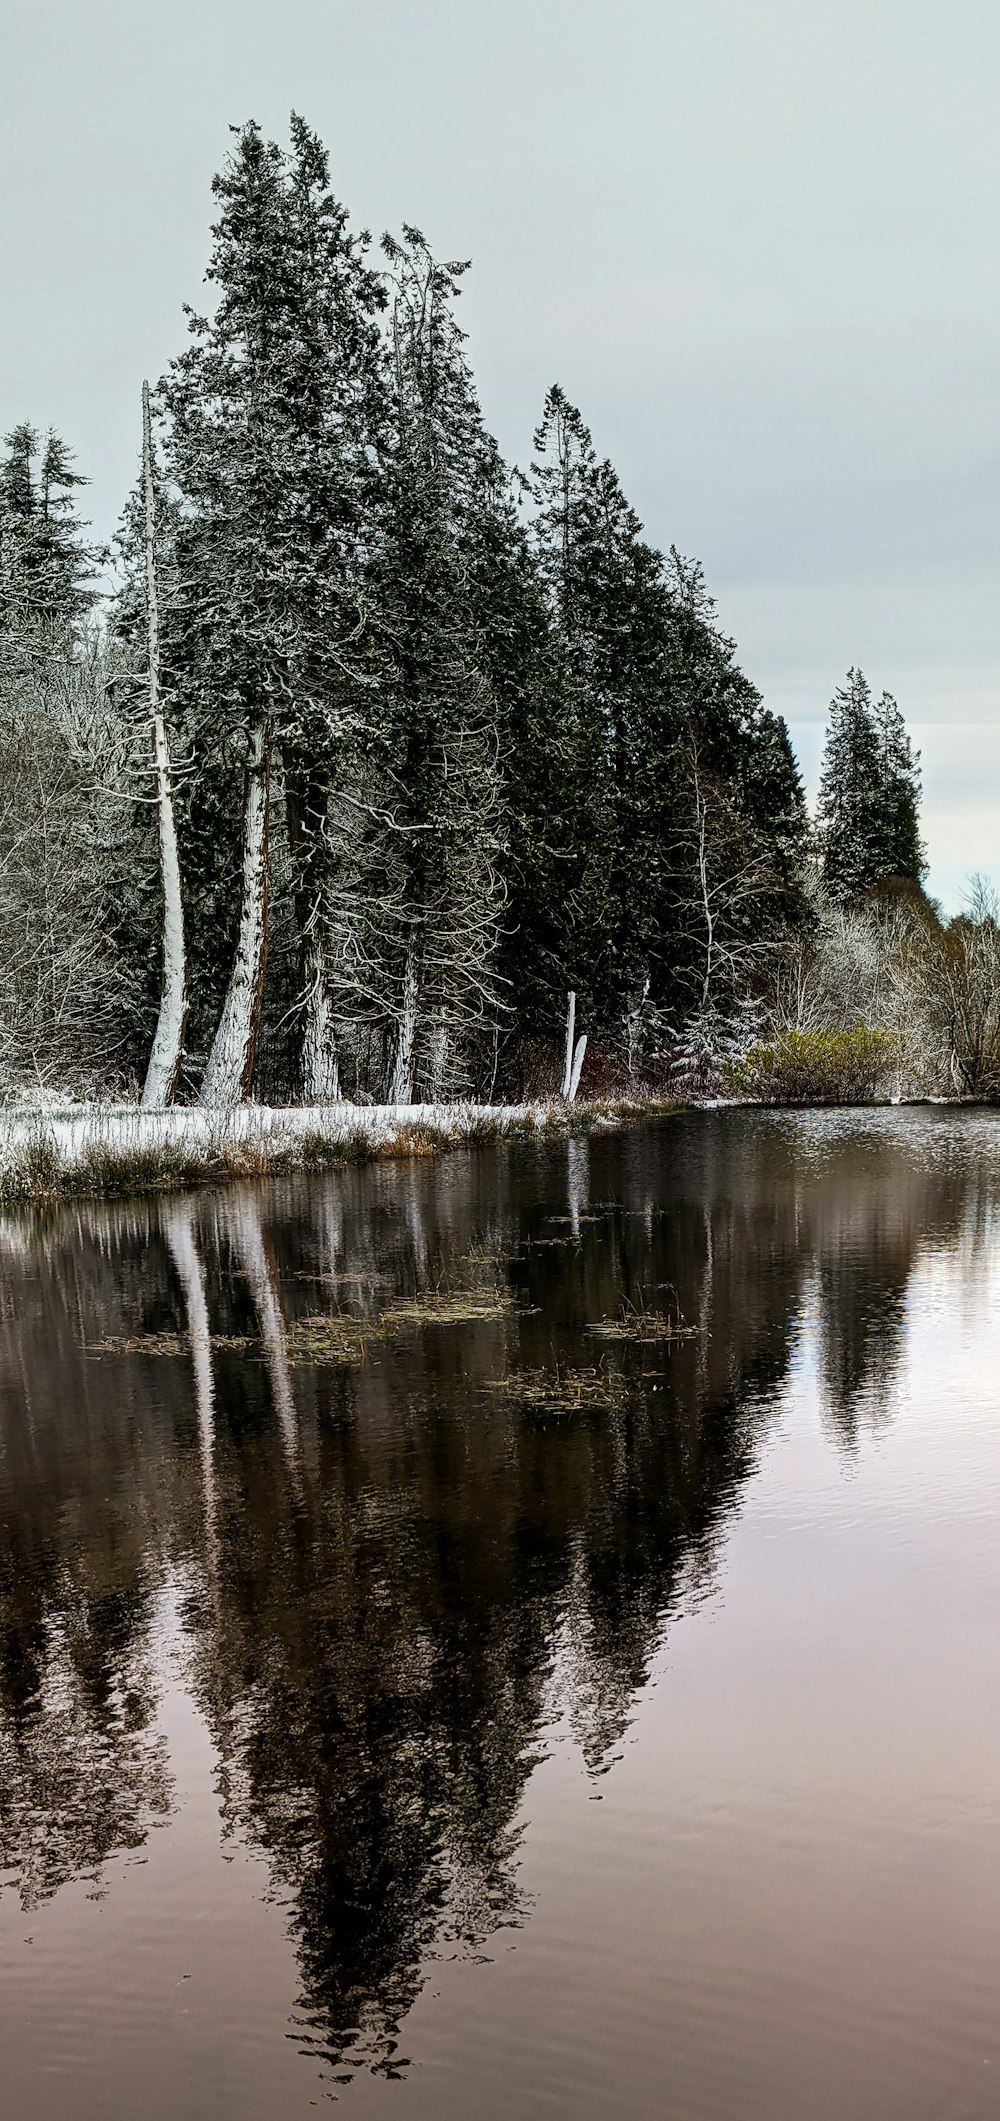 uno specchio d'acqua circondato da alberi e neve